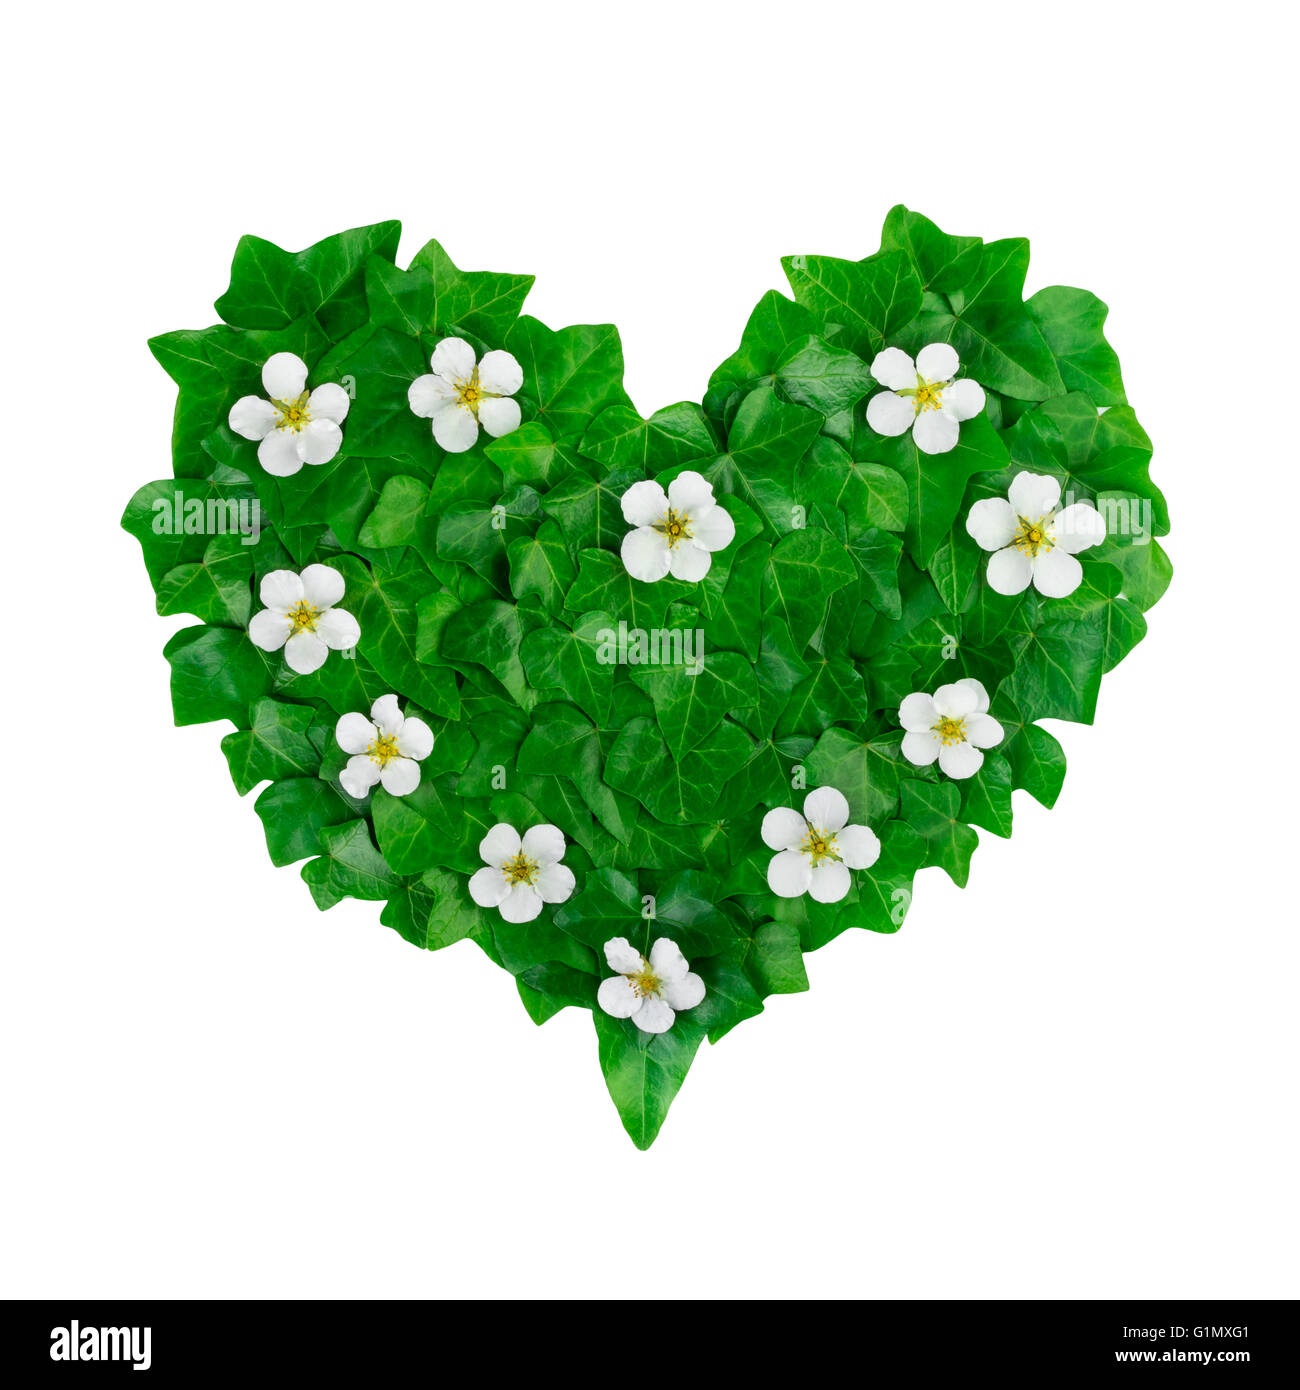 Coeur vert motif de feuilles de lierre et de fleurs blanches. Arrangement naturel créative faite de feuilles de lierre vert. Banque D'Images